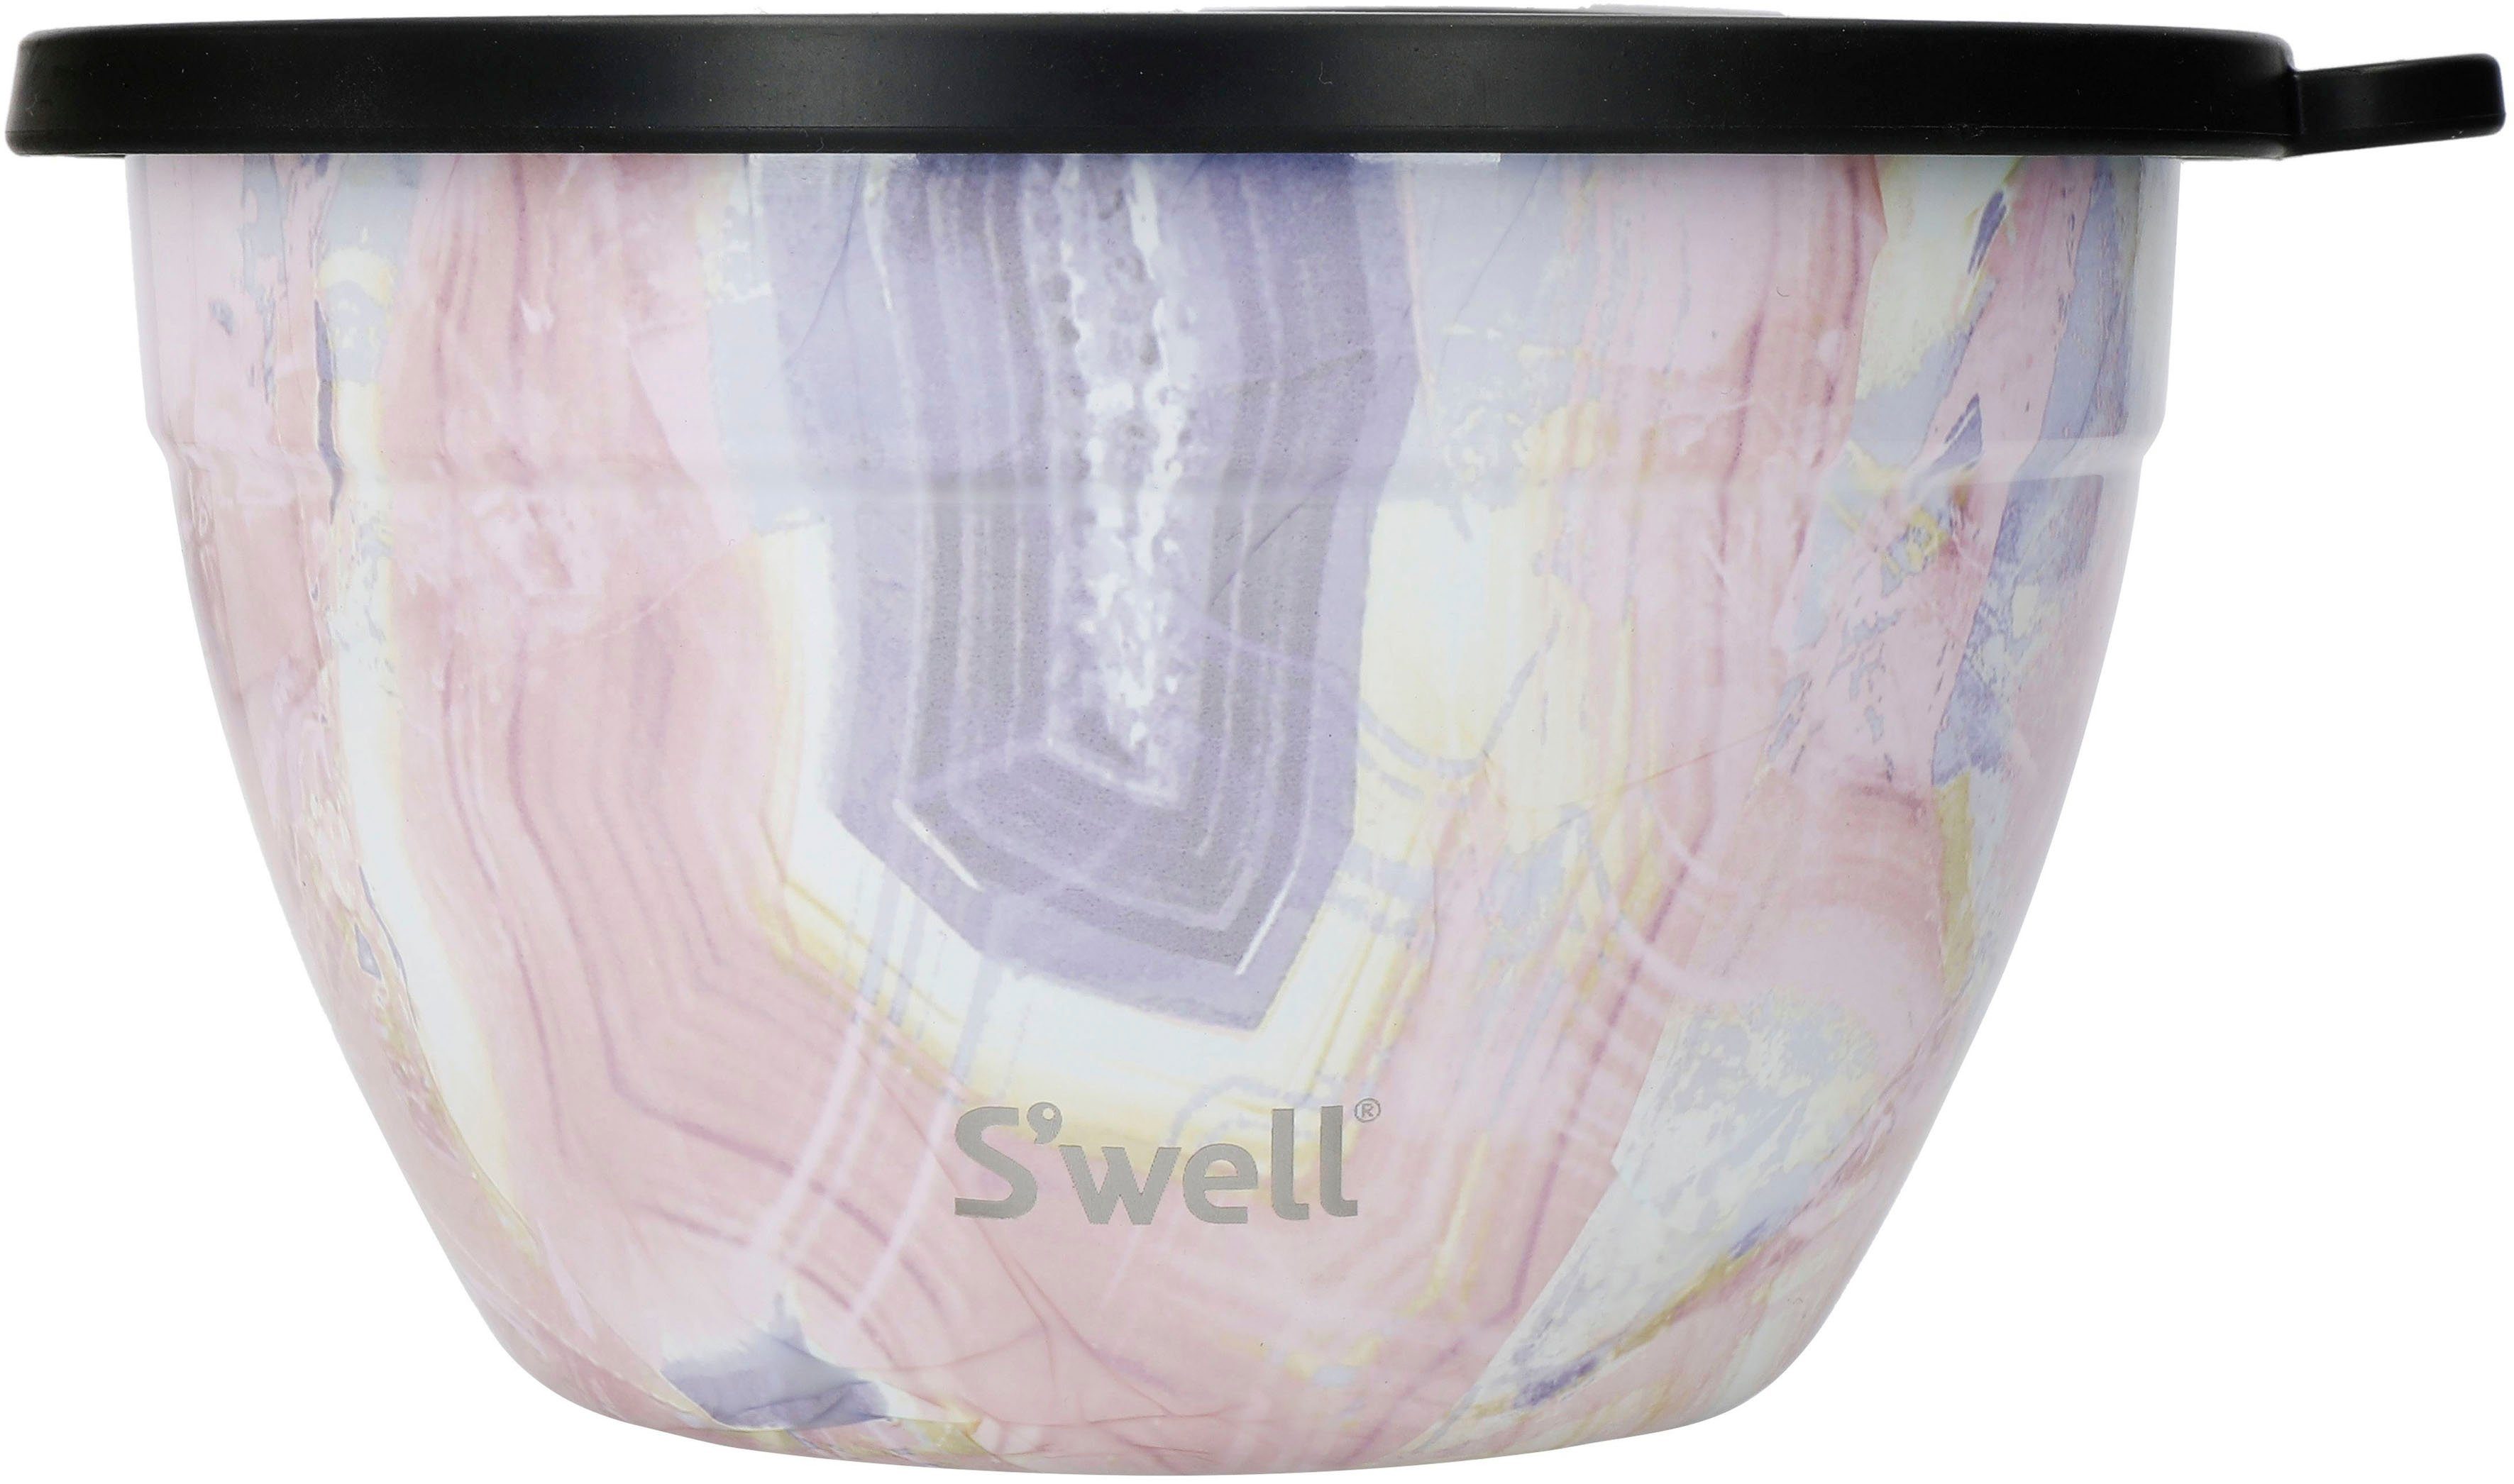 S'well Salatschüssel S'well Bowl vakuumisolierten Außenschale Kit, mit 1.9L, Edelstahl, Calacatta (3-tlg), Rose Gold Therma-S'well®-Technologie Salad Geode